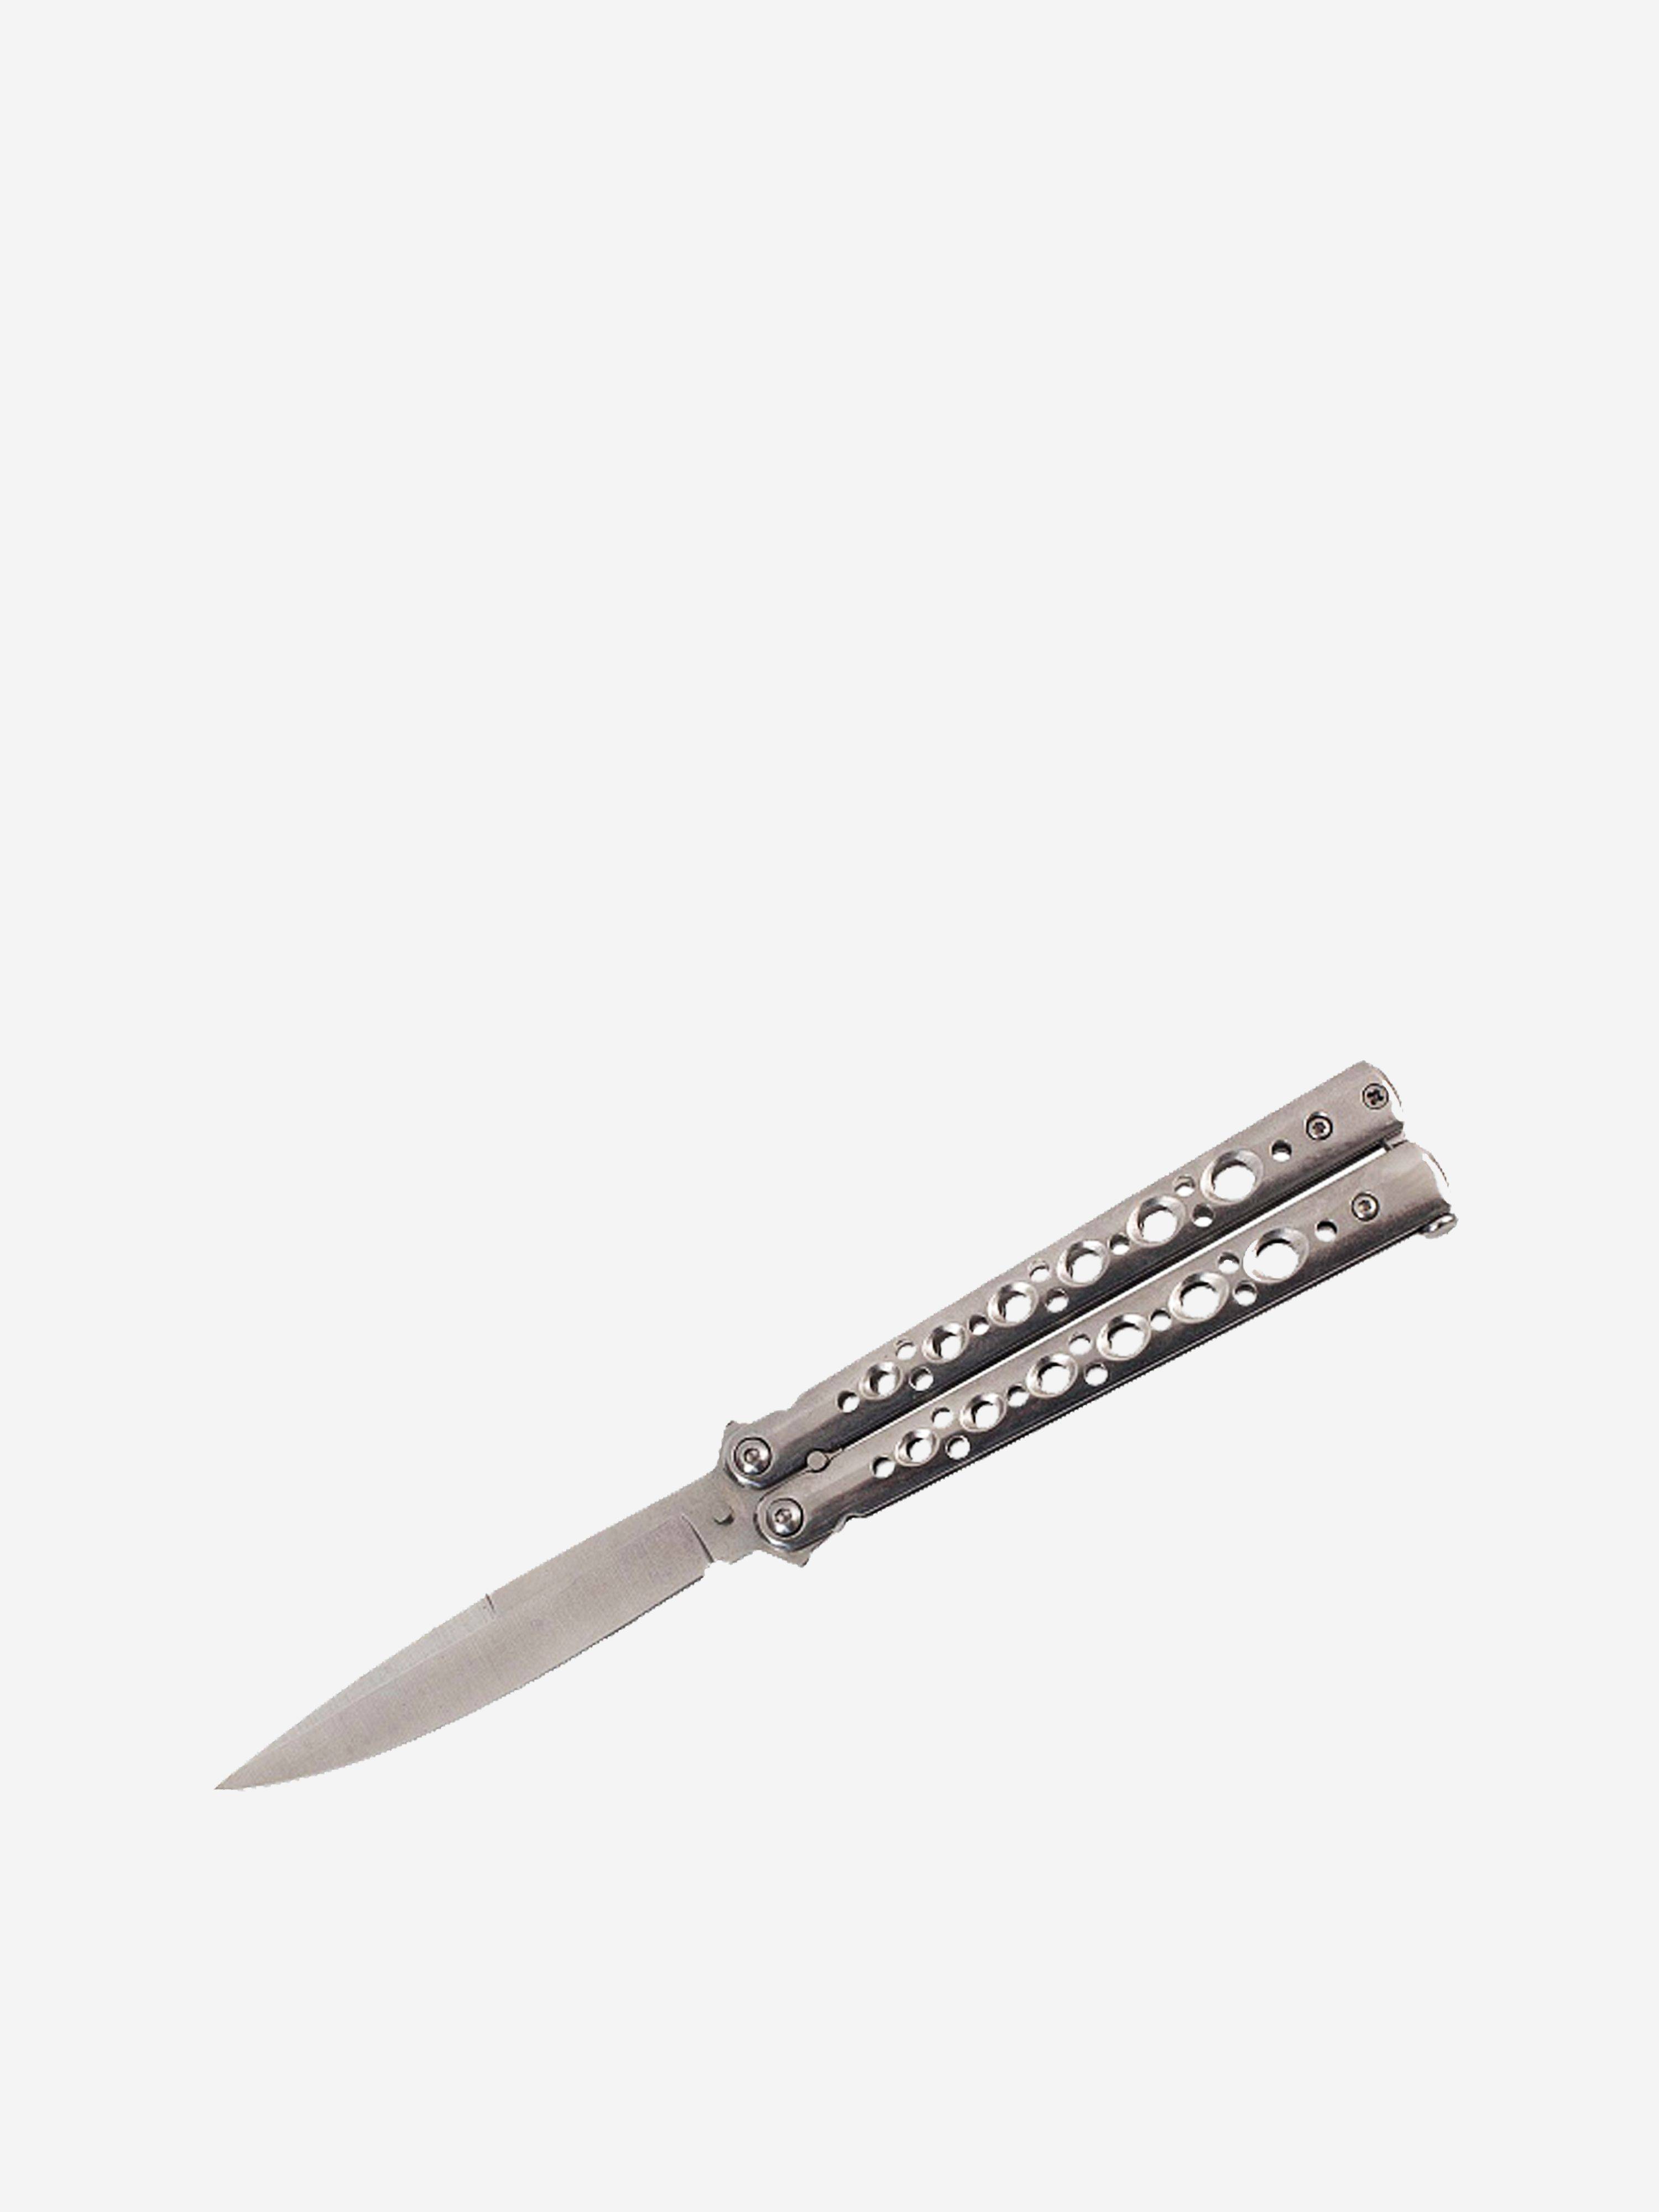 Мет нож. Stainless Steel нож бабочка. Железный нож бабочка сапфир. Нож 906 h-906 метал руч расклад бабочка. Нож бабочка Jin Hong li Stainless Steel Knife.